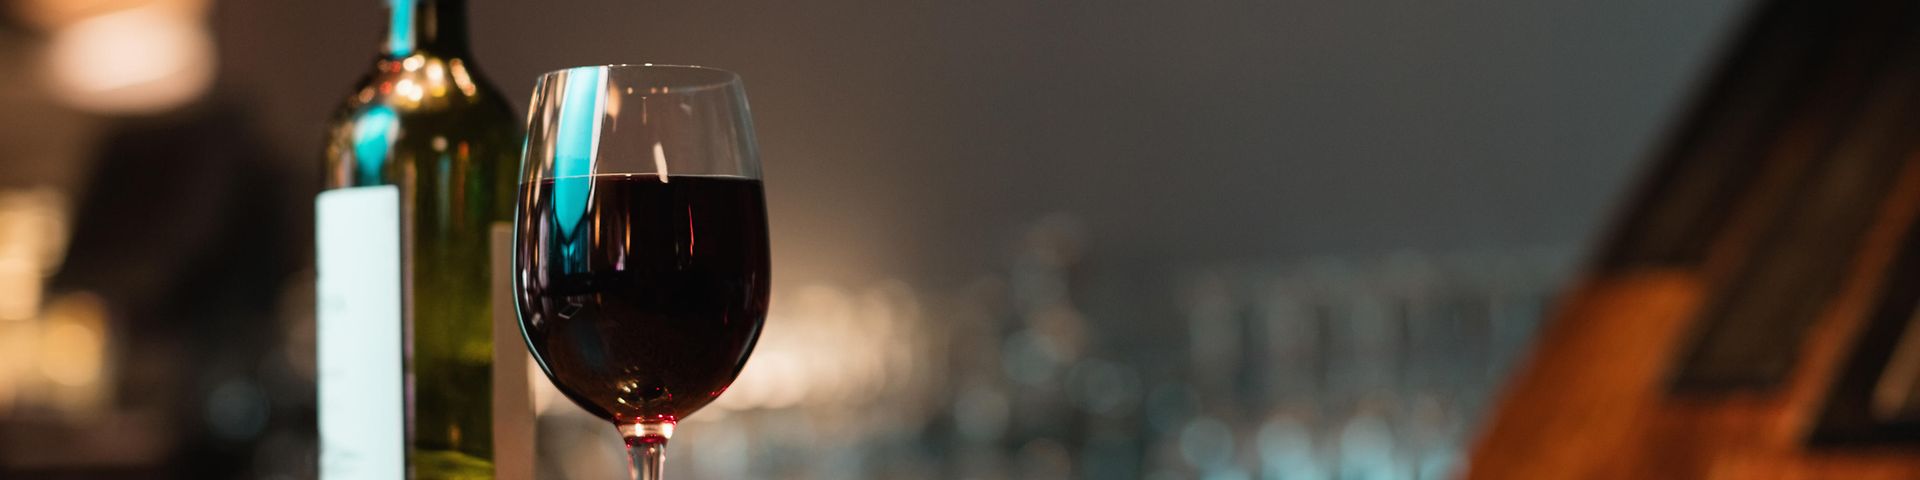 Rotwein und Weinglas